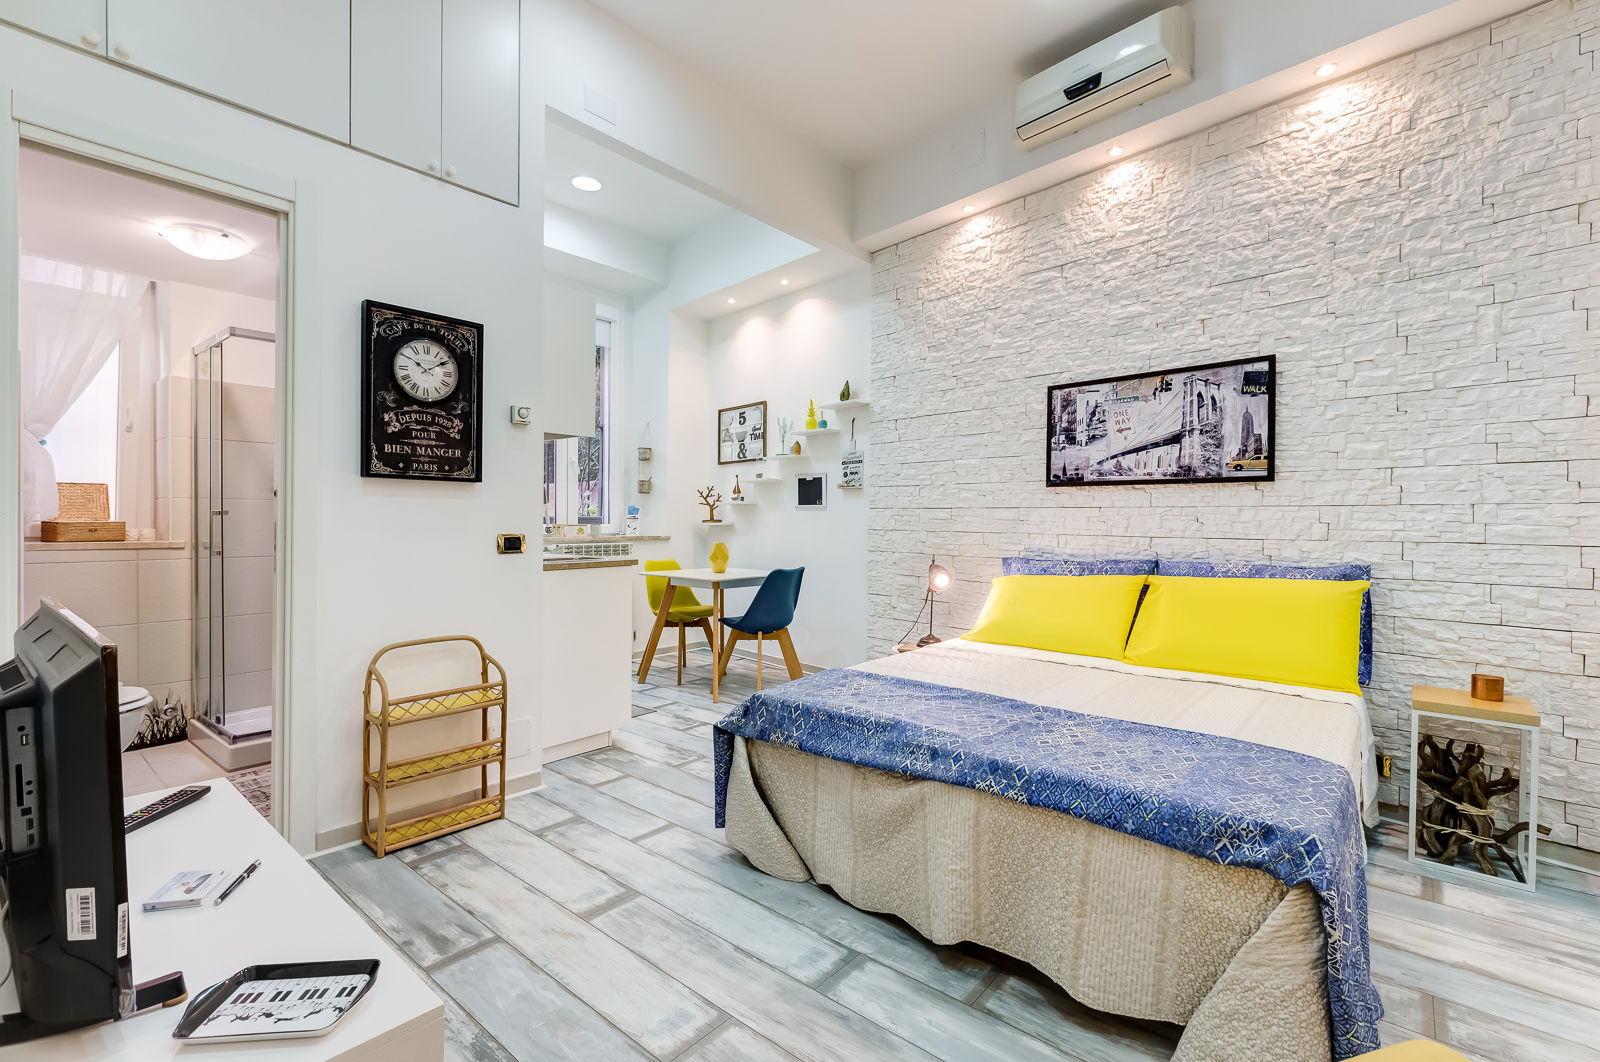 Mini Appartamento Turistico - Roma, Luca Tranquilli - Fotografo Luca Tranquilli - Fotografo Dormitorios de estilo moderno